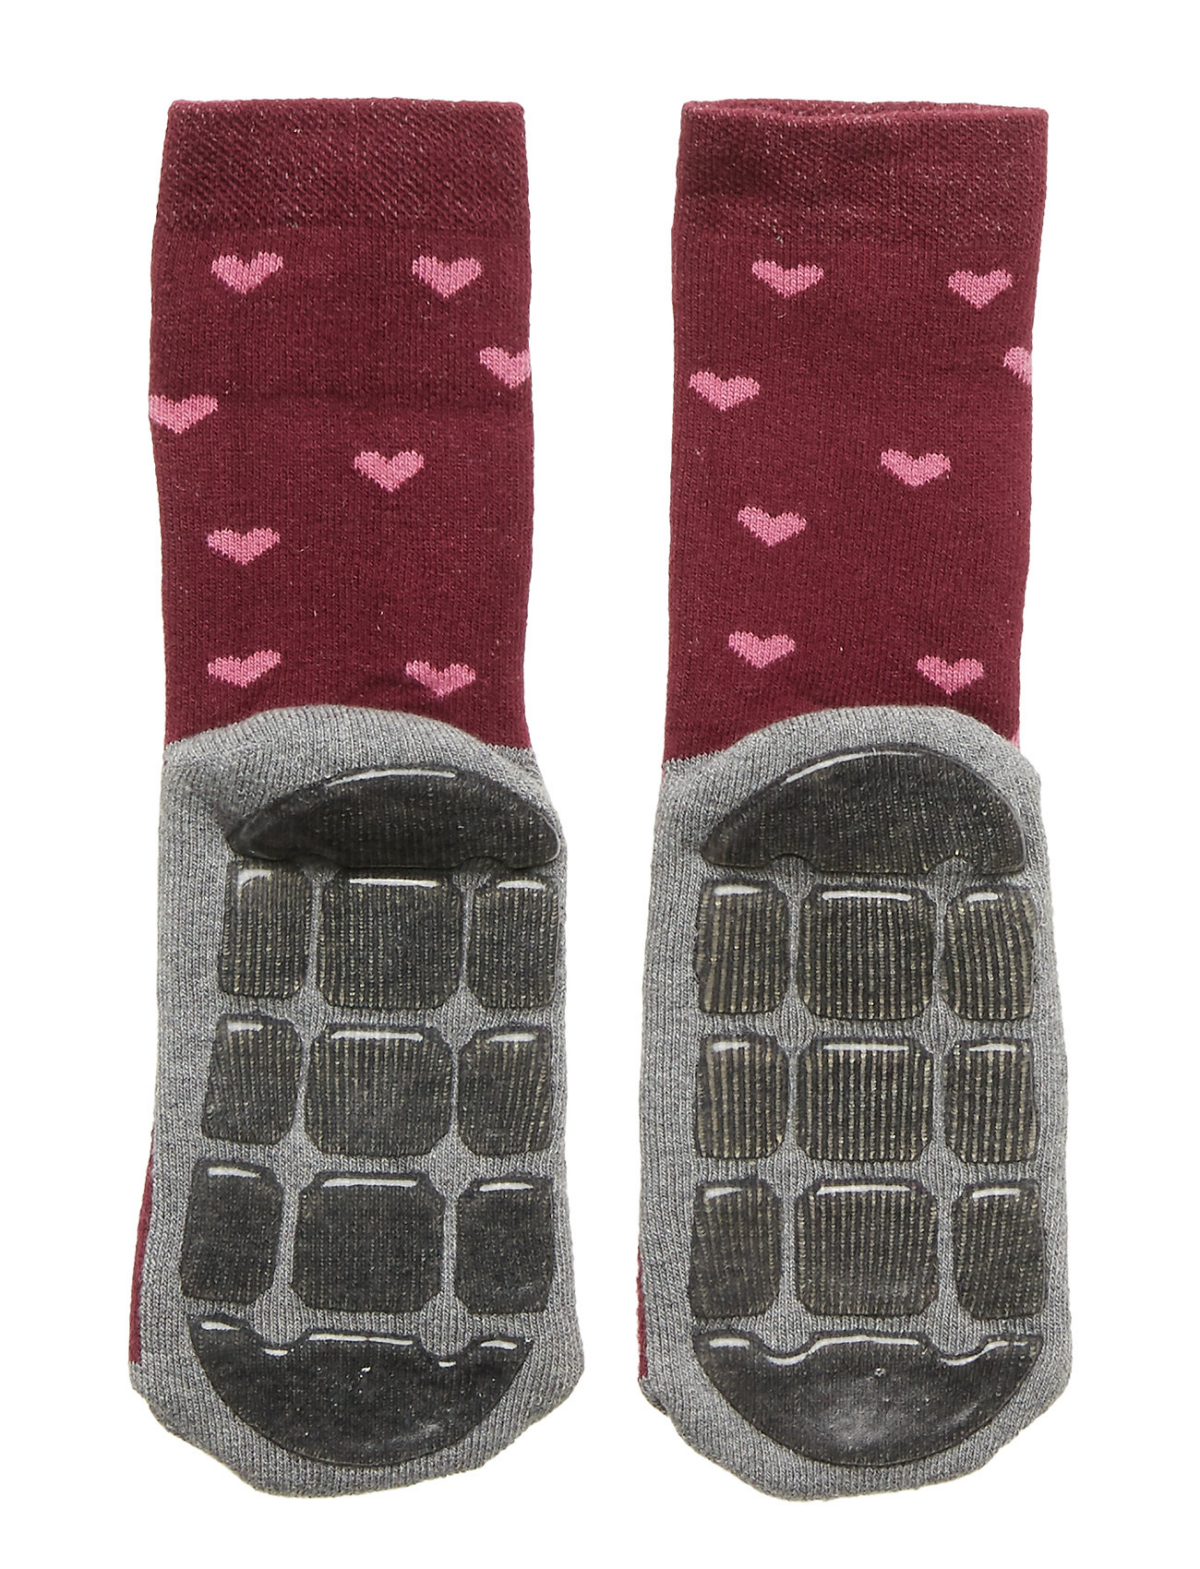 Meltoni stopperiga sokid, kiisuga Lasteriided - HellyK - Kvaliteetsed lasteriided, villariided, barefoot jalatsid